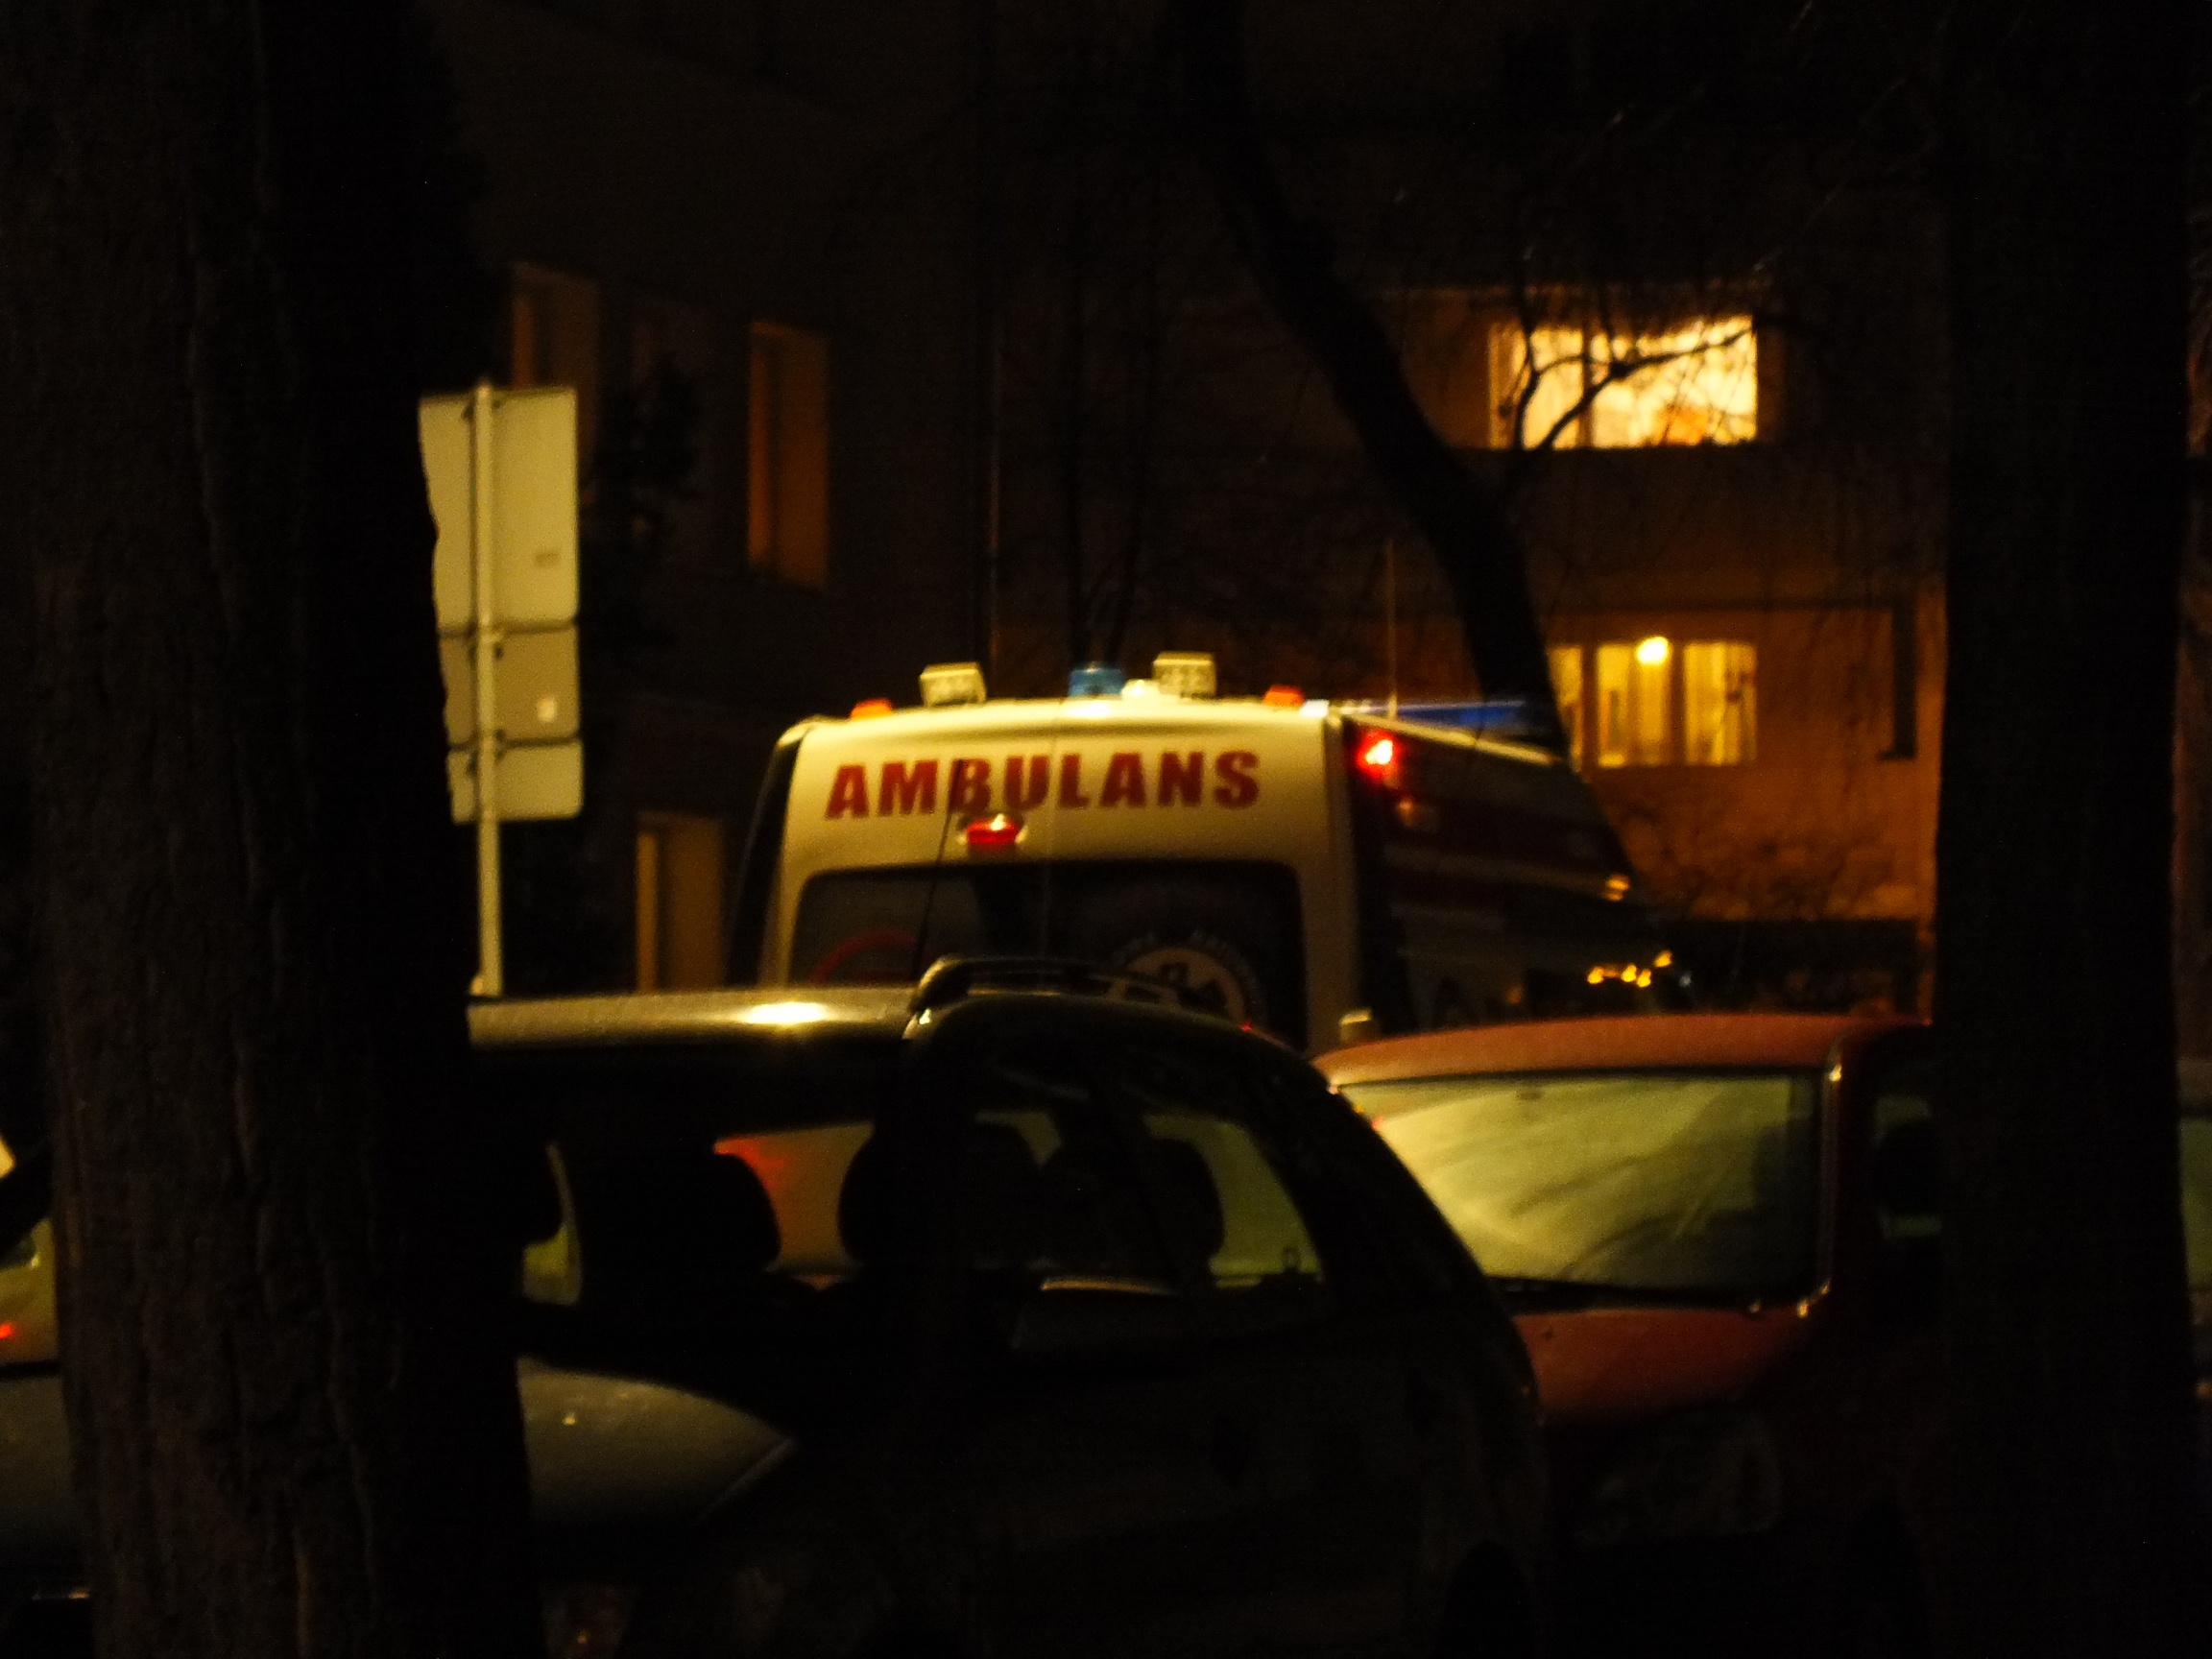 Czasem pod osłoną nocy zajeżdża ambulans. Tym razem na szczęście obyło się bez noszy.Czasem pod osłoną nocy zajeżdża ambulans. Tym razem na szczęście obyło się bez noszy.